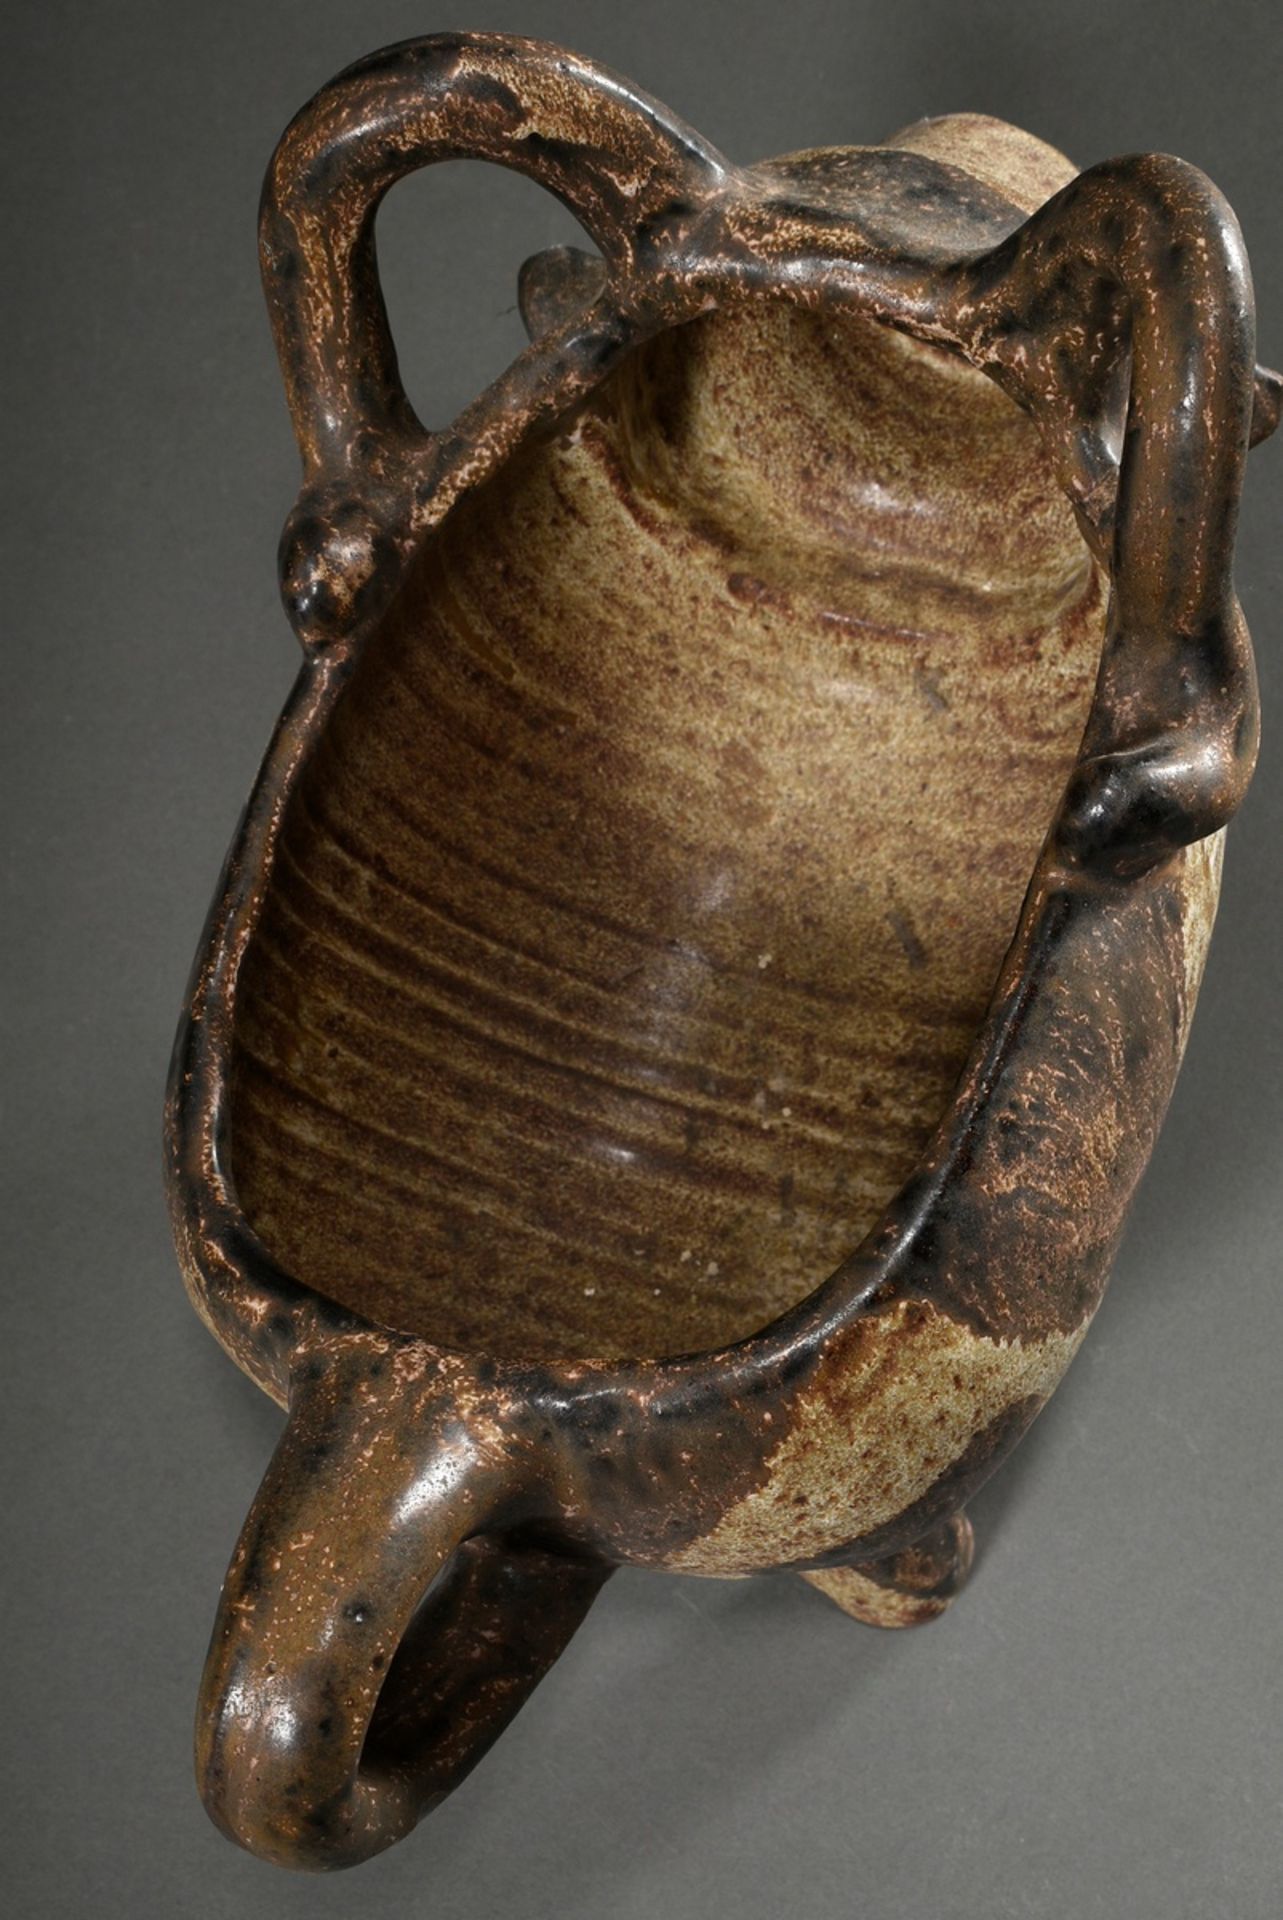 Maetzel, Monika (1917-2010) studio ceramics vessel in animal form "bull", ceramic white/brown glaze - Image 5 of 6